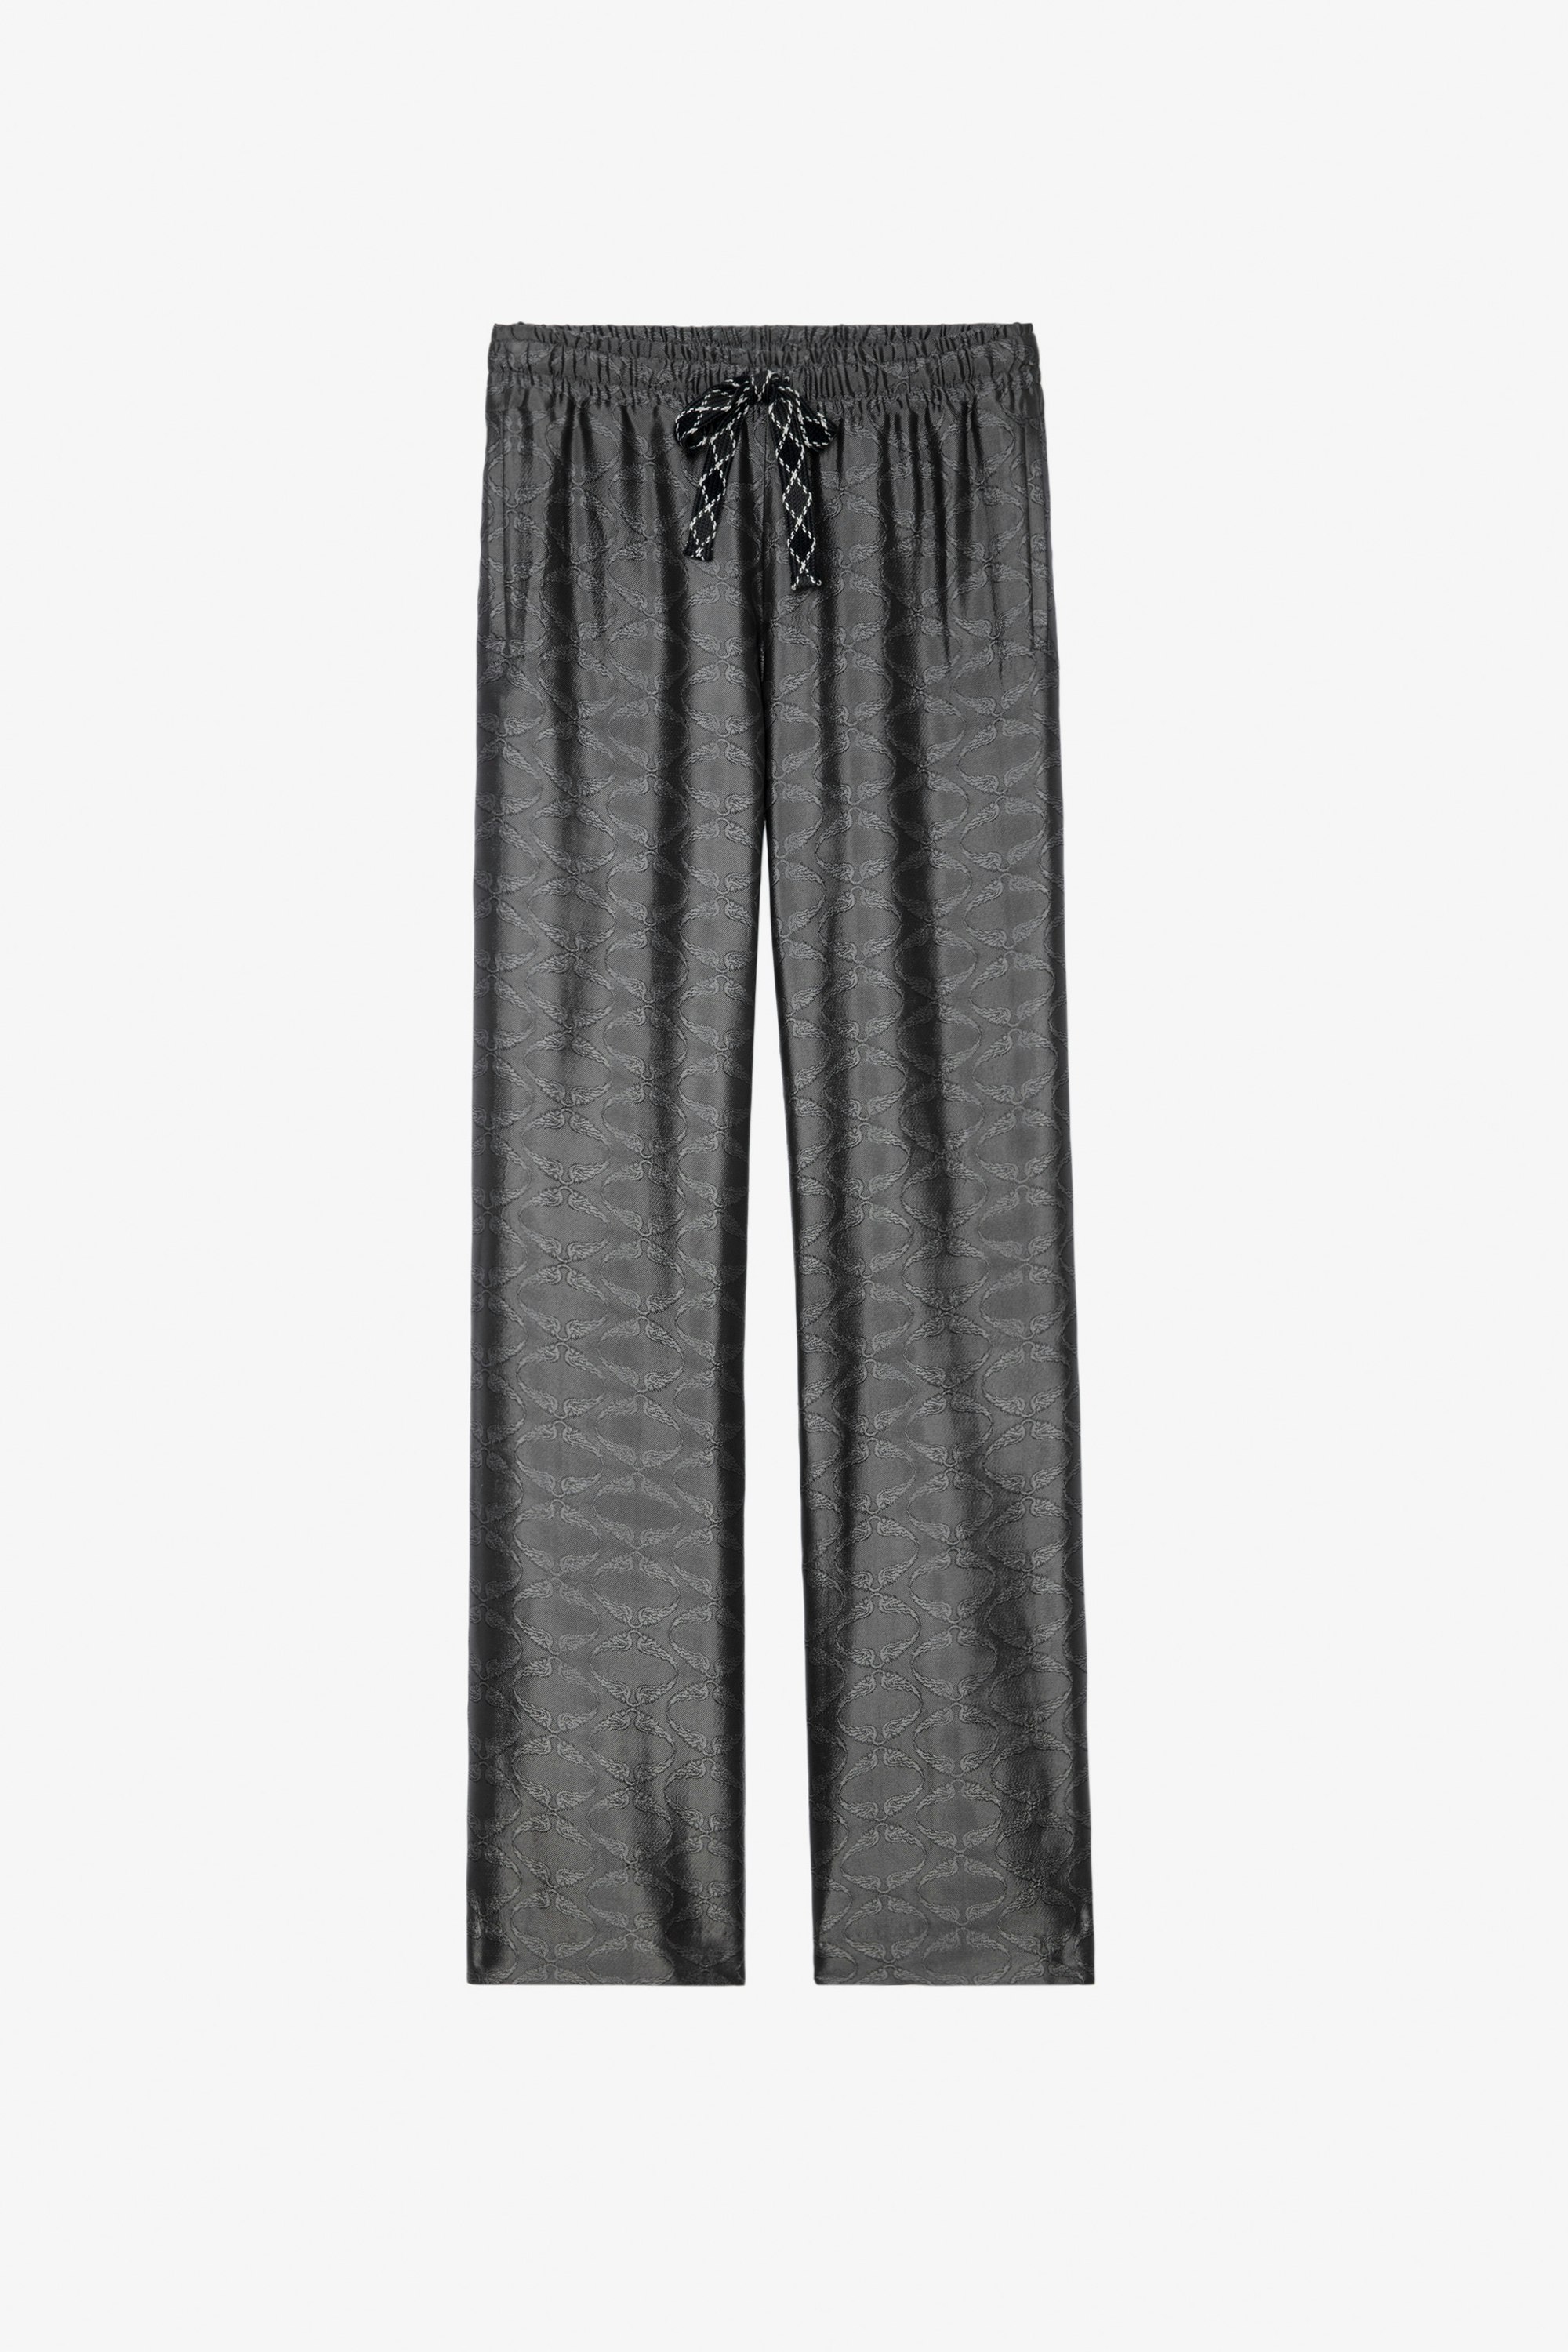 Pomy Jacquard Pants - Women’s anthracite wing-print jacquard pants.